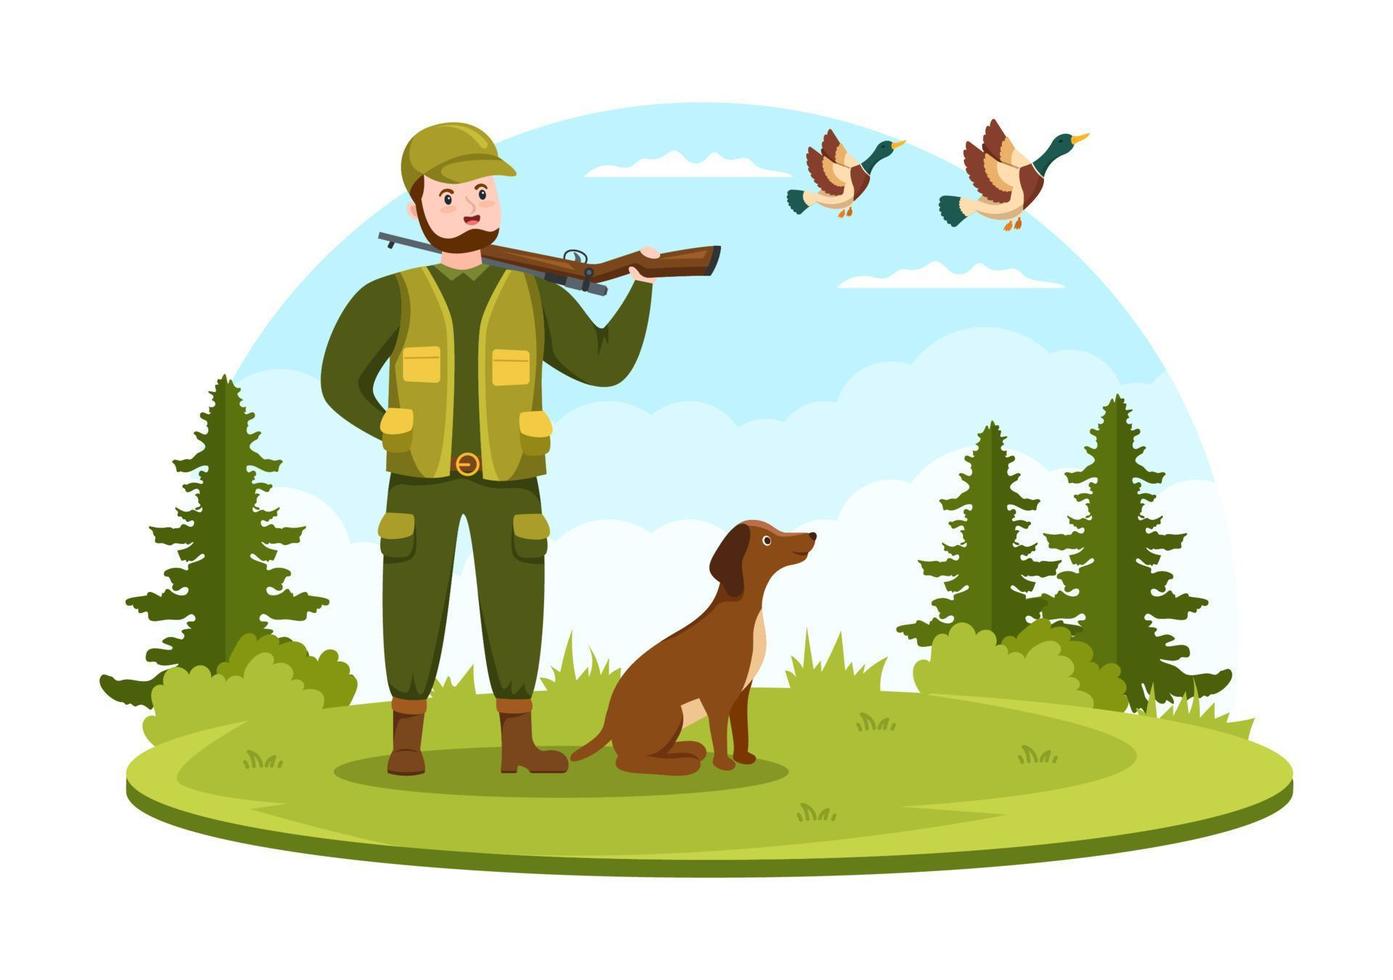 chasseur avec fusil de chasse ou arme tirant sur des oiseaux ou des animaux dans la forêt sur une illustration de modèle de dessin à la main de dessin animé plat vecteur